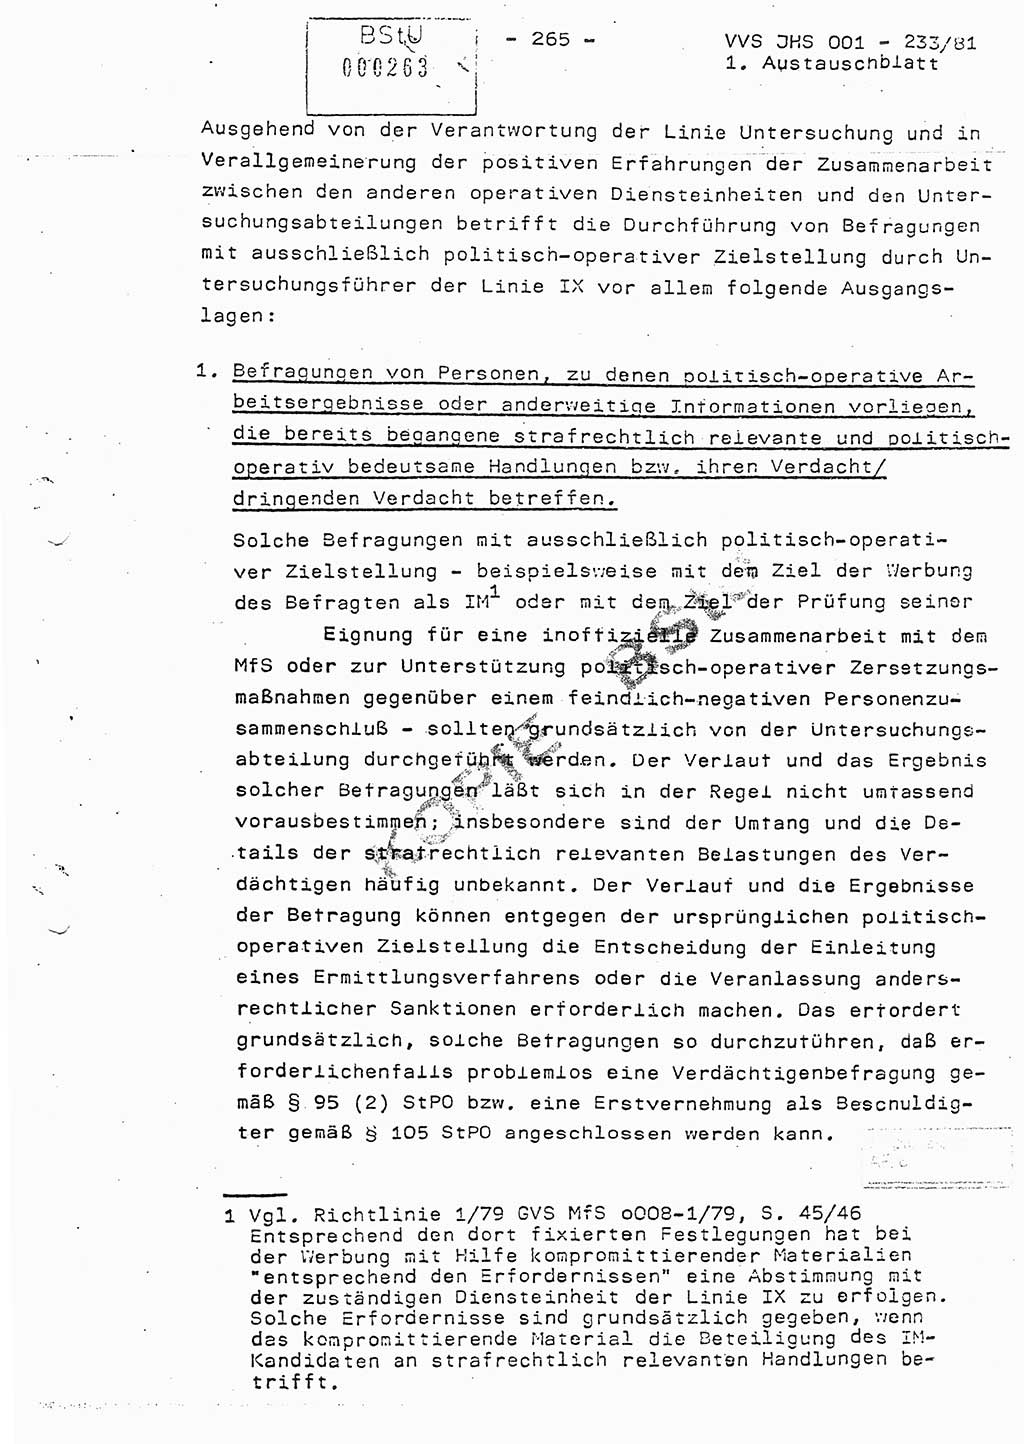 Dissertation Oberstleutnant Horst Zank (JHS), Oberstleutnant Dr. Karl-Heinz Knoblauch (JHS), Oberstleutnant Gustav-Adolf Kowalewski (HA Ⅸ), Oberstleutnant Wolfgang Plötner (HA Ⅸ), Ministerium für Staatssicherheit (MfS) [Deutsche Demokratische Republik (DDR)], Juristische Hochschule (JHS), Vertrauliche Verschlußsache (VVS) o001-233/81, Potsdam 1981, Blatt 265 (Diss. MfS DDR JHS VVS o001-233/81 1981, Bl. 265)